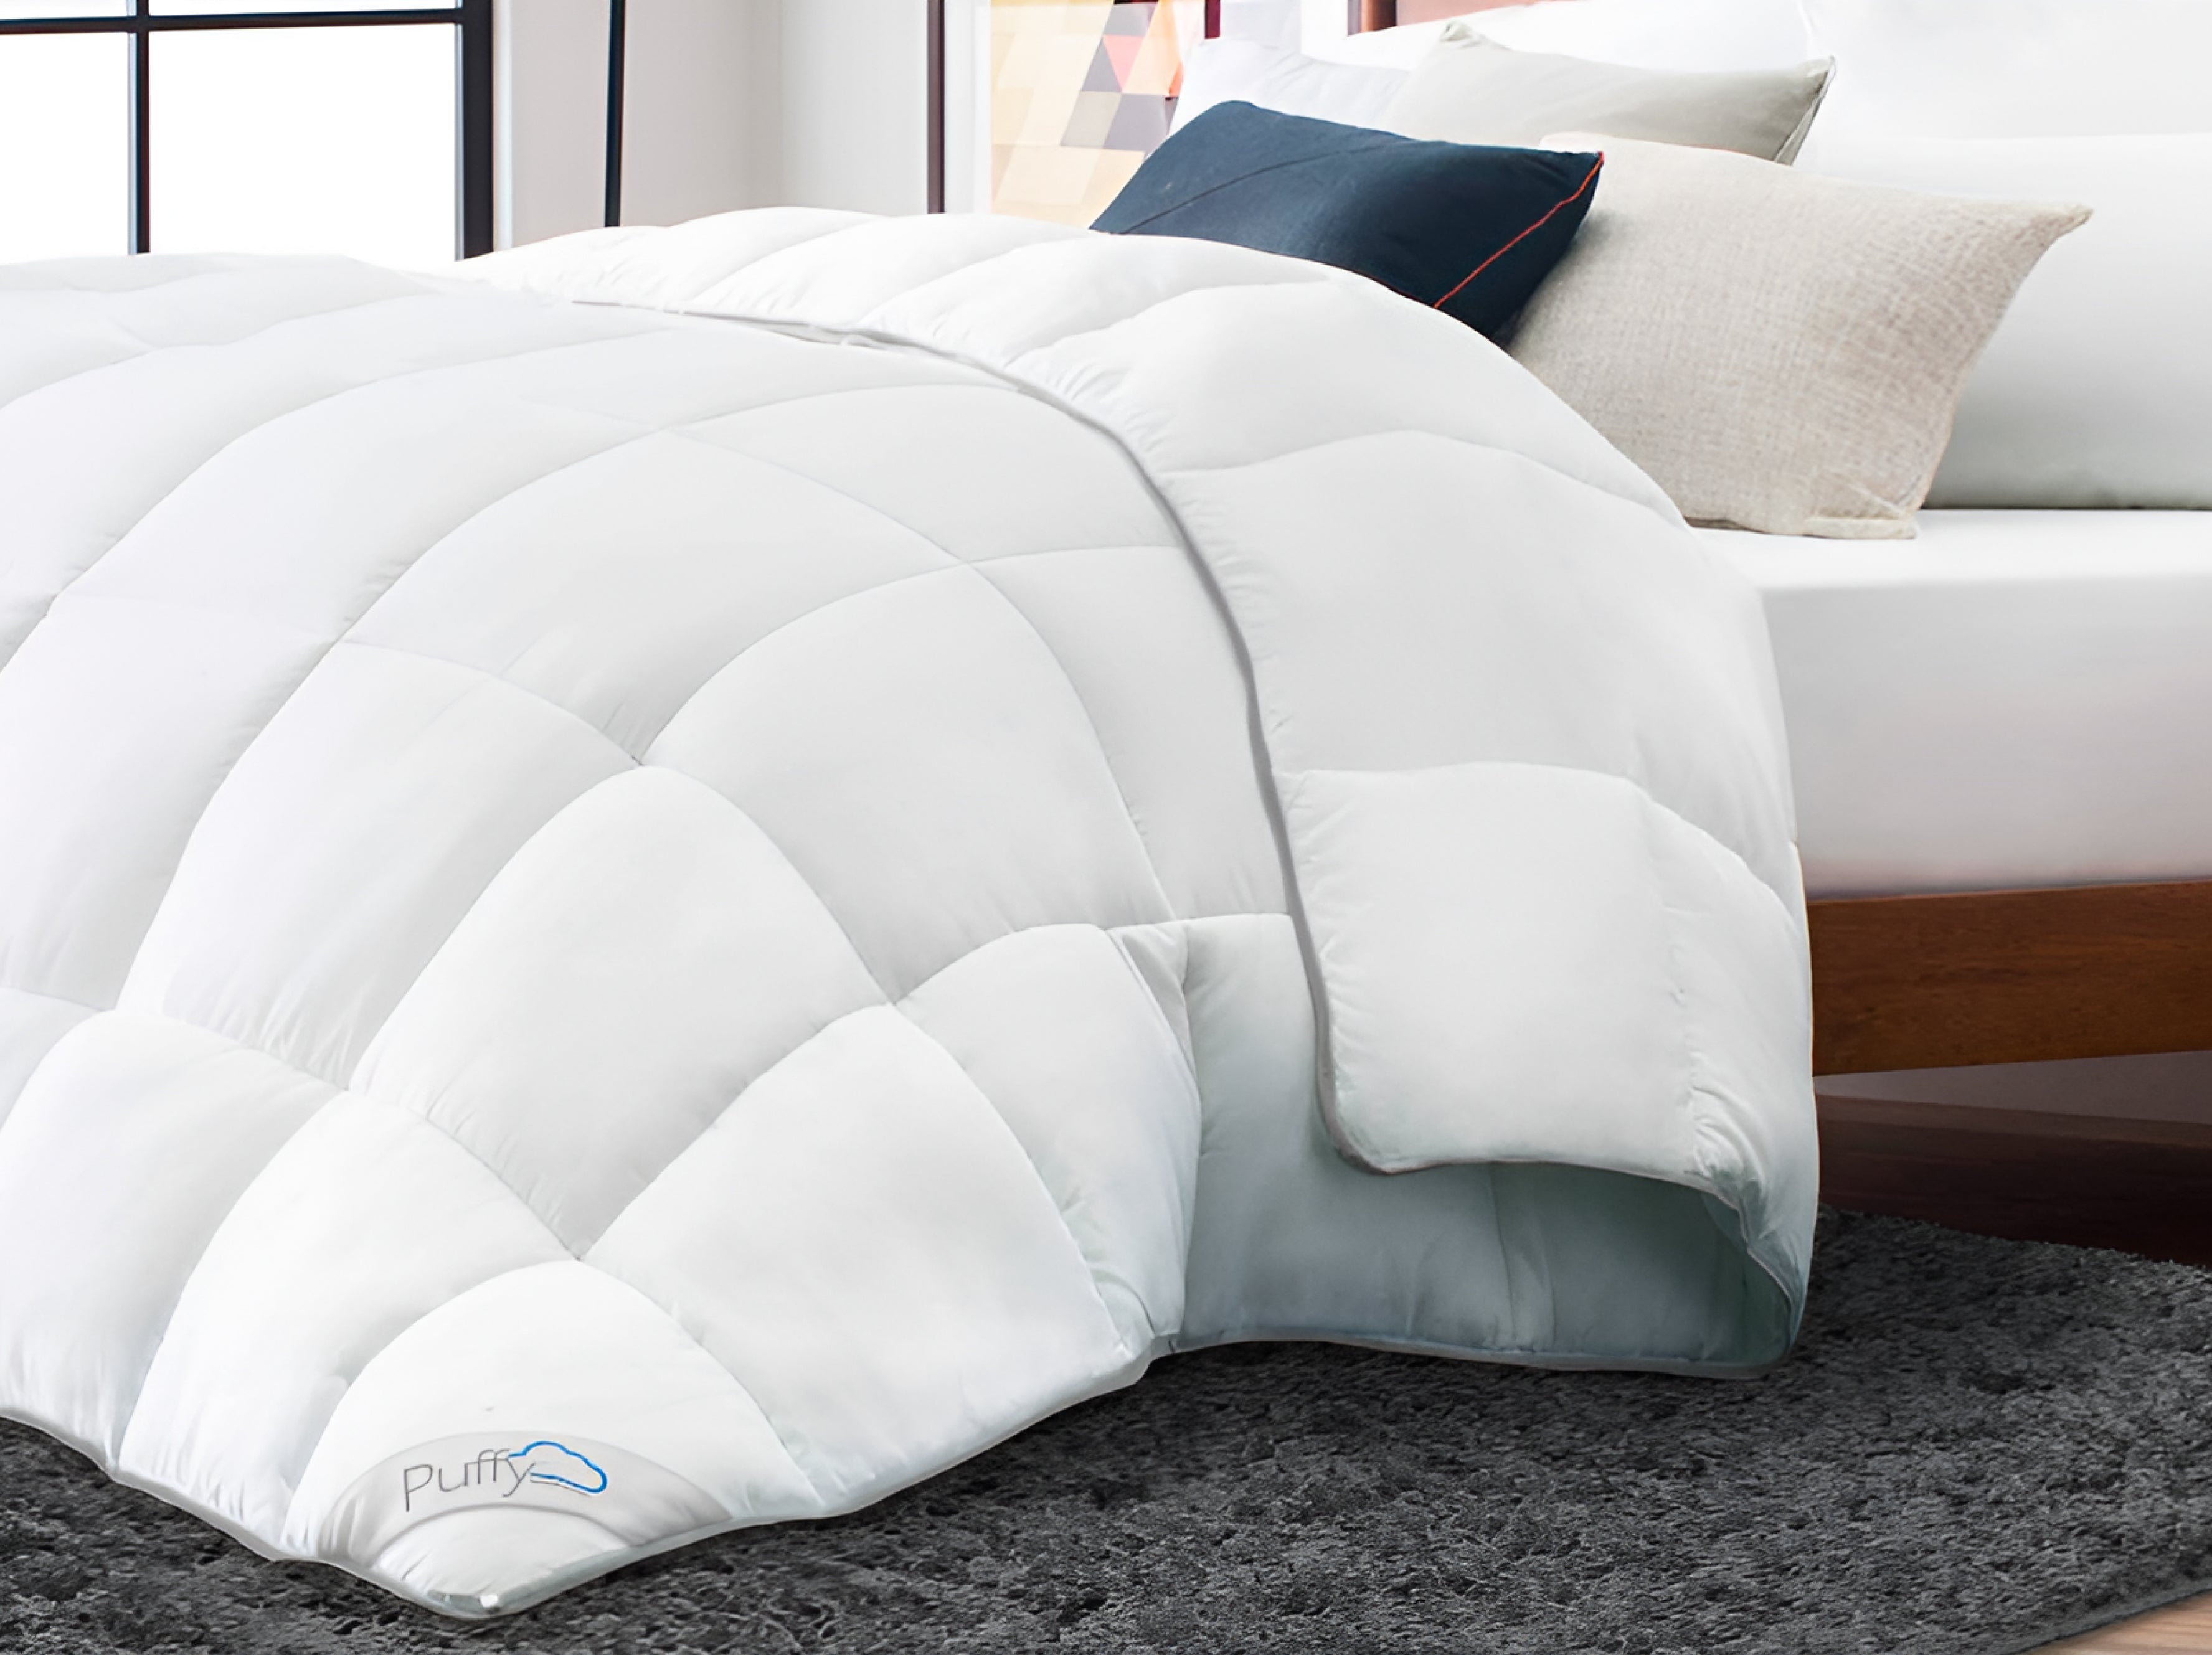 Puffy Deluxe Comforter